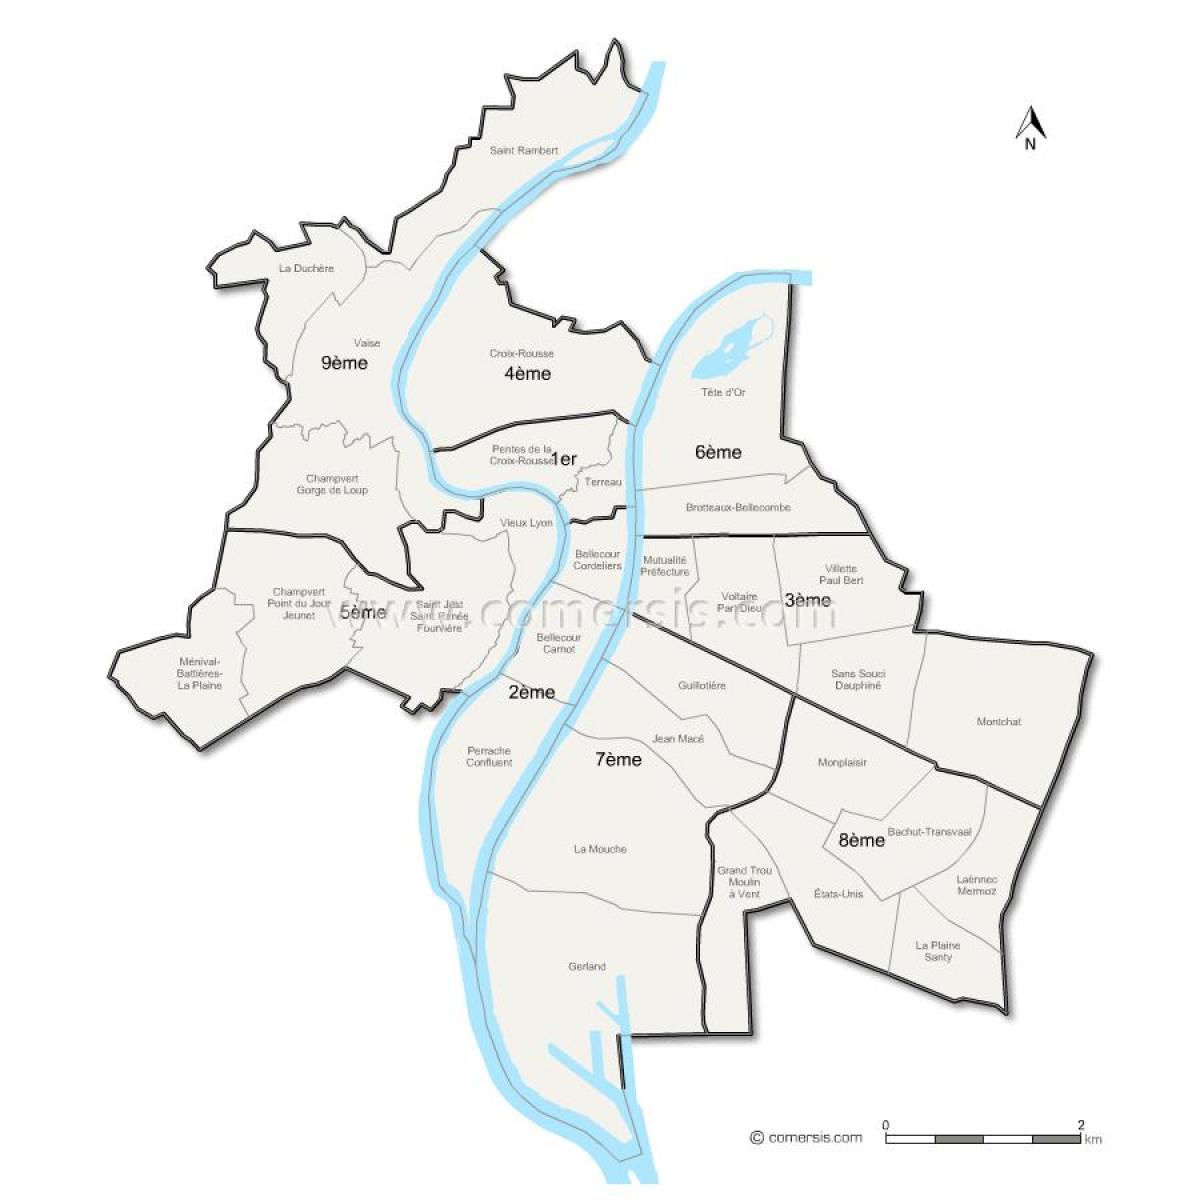 zemljevid Lyon okrožju